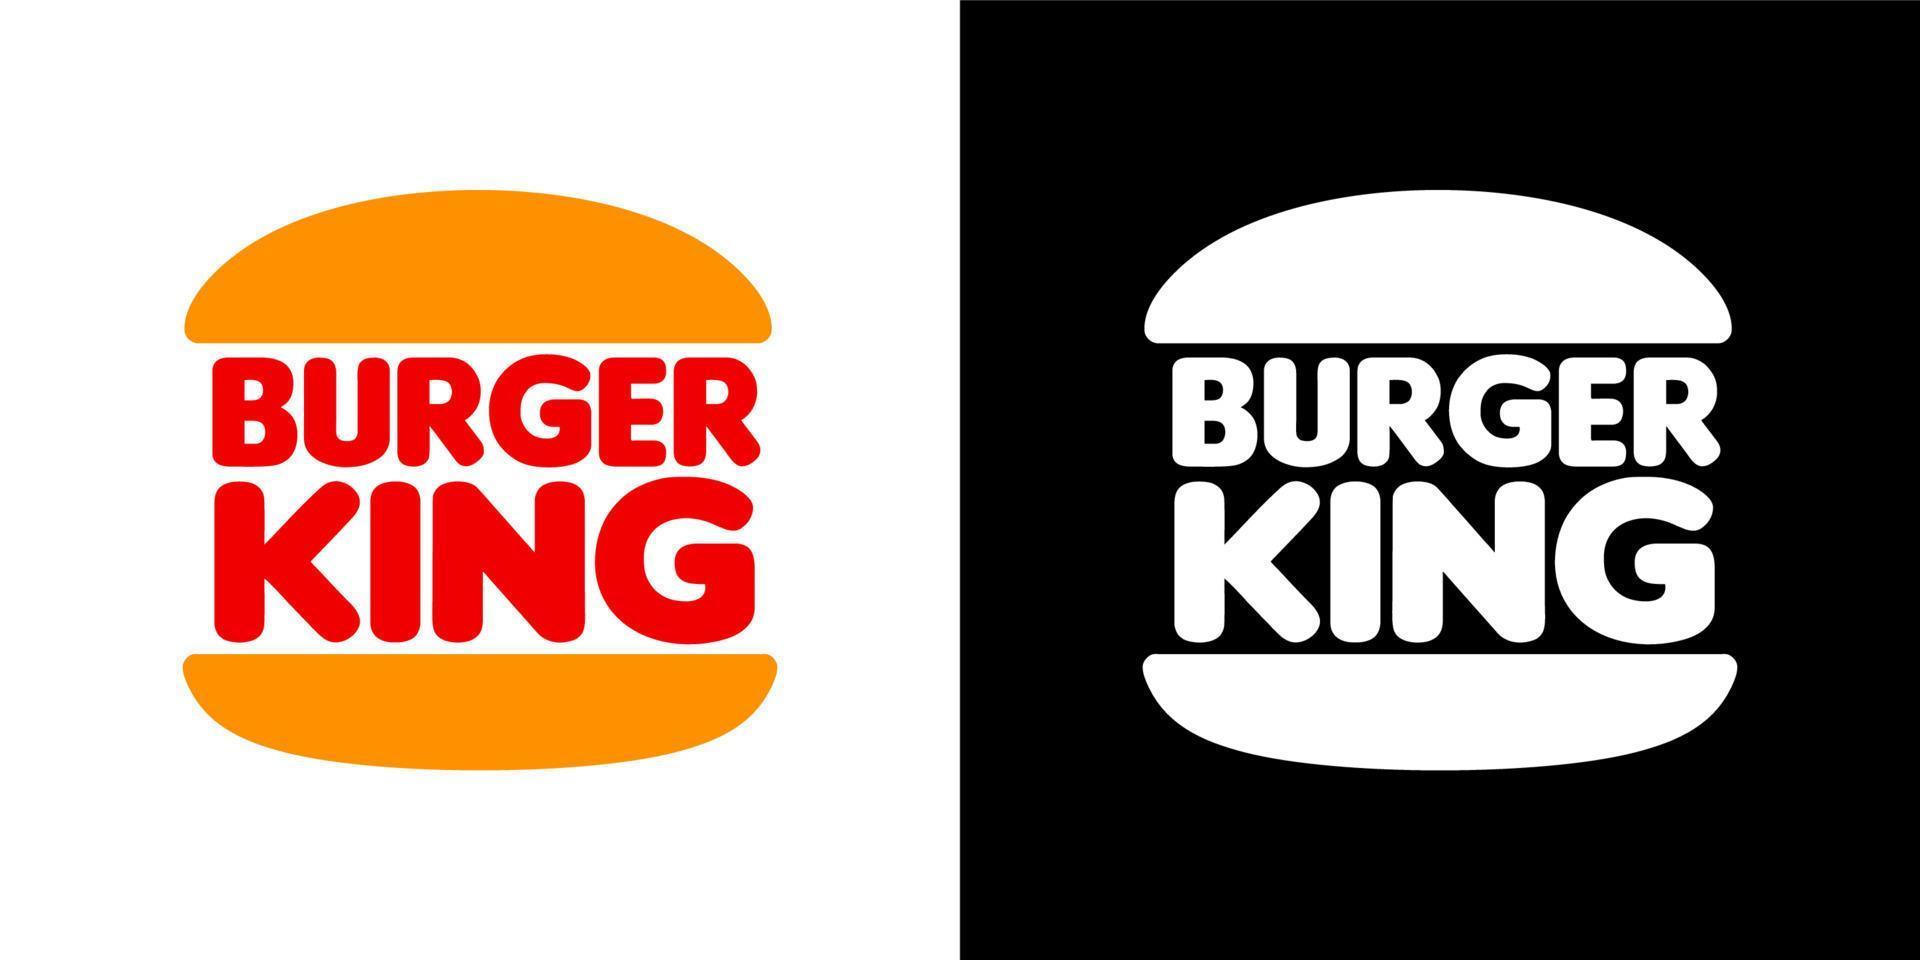 Burger king logo vector, Burger king icon free vector 20190567 Vector ...